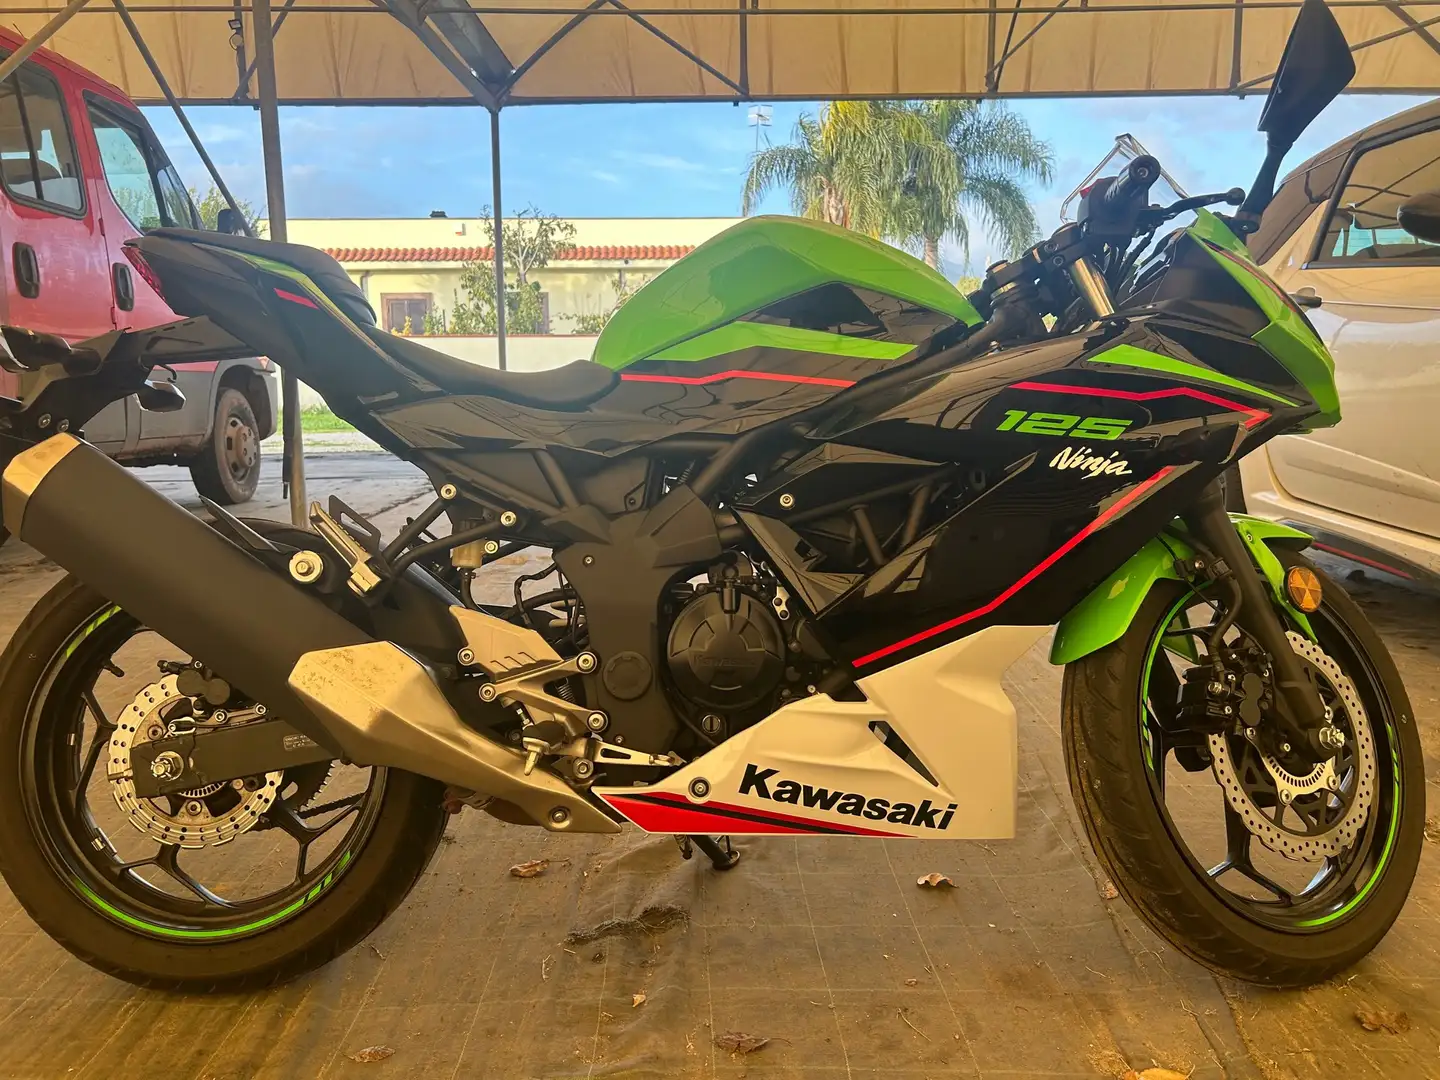 Kawasaki Ninja 125 Green - 2